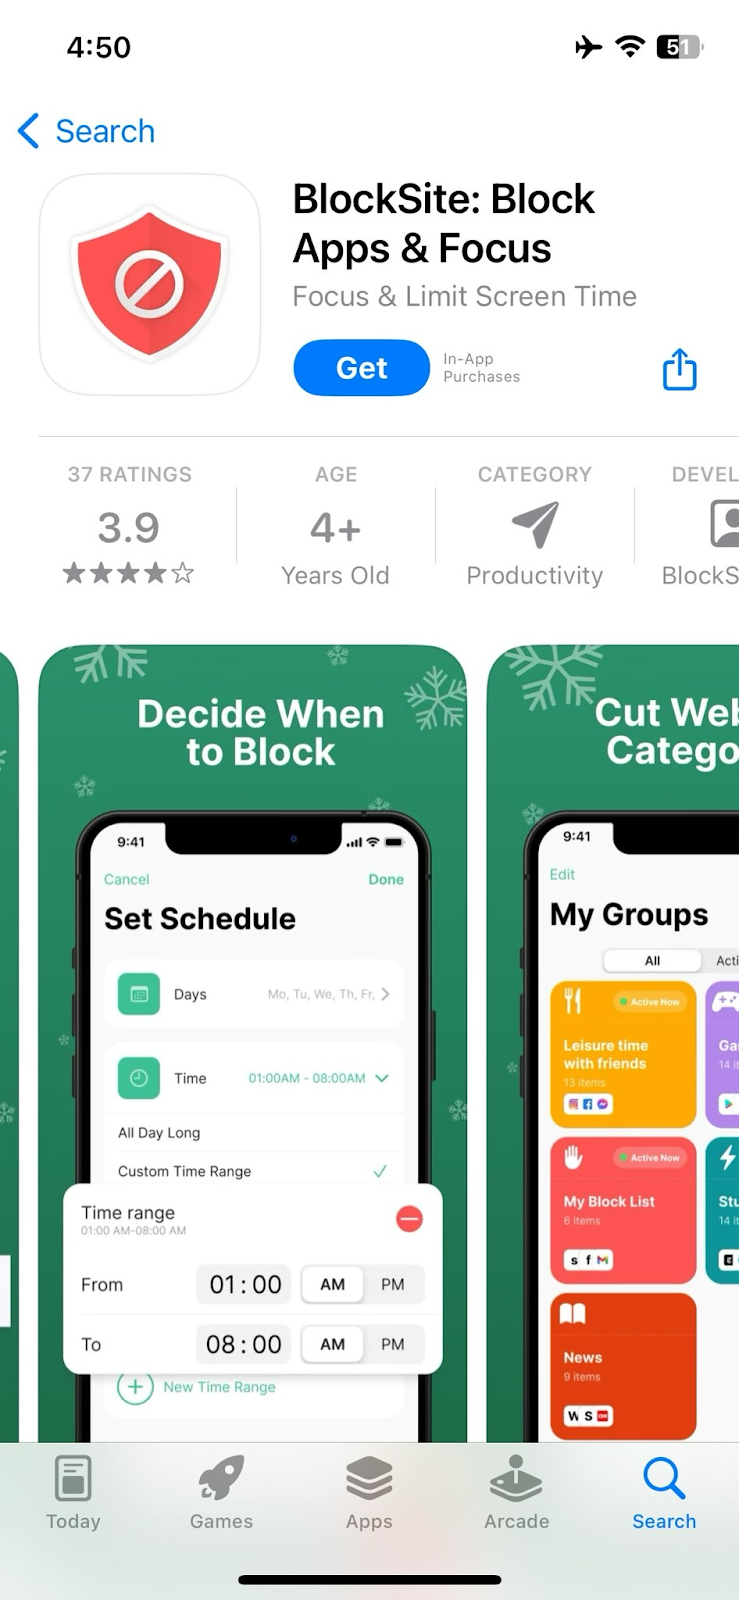 Download the BlockSite App